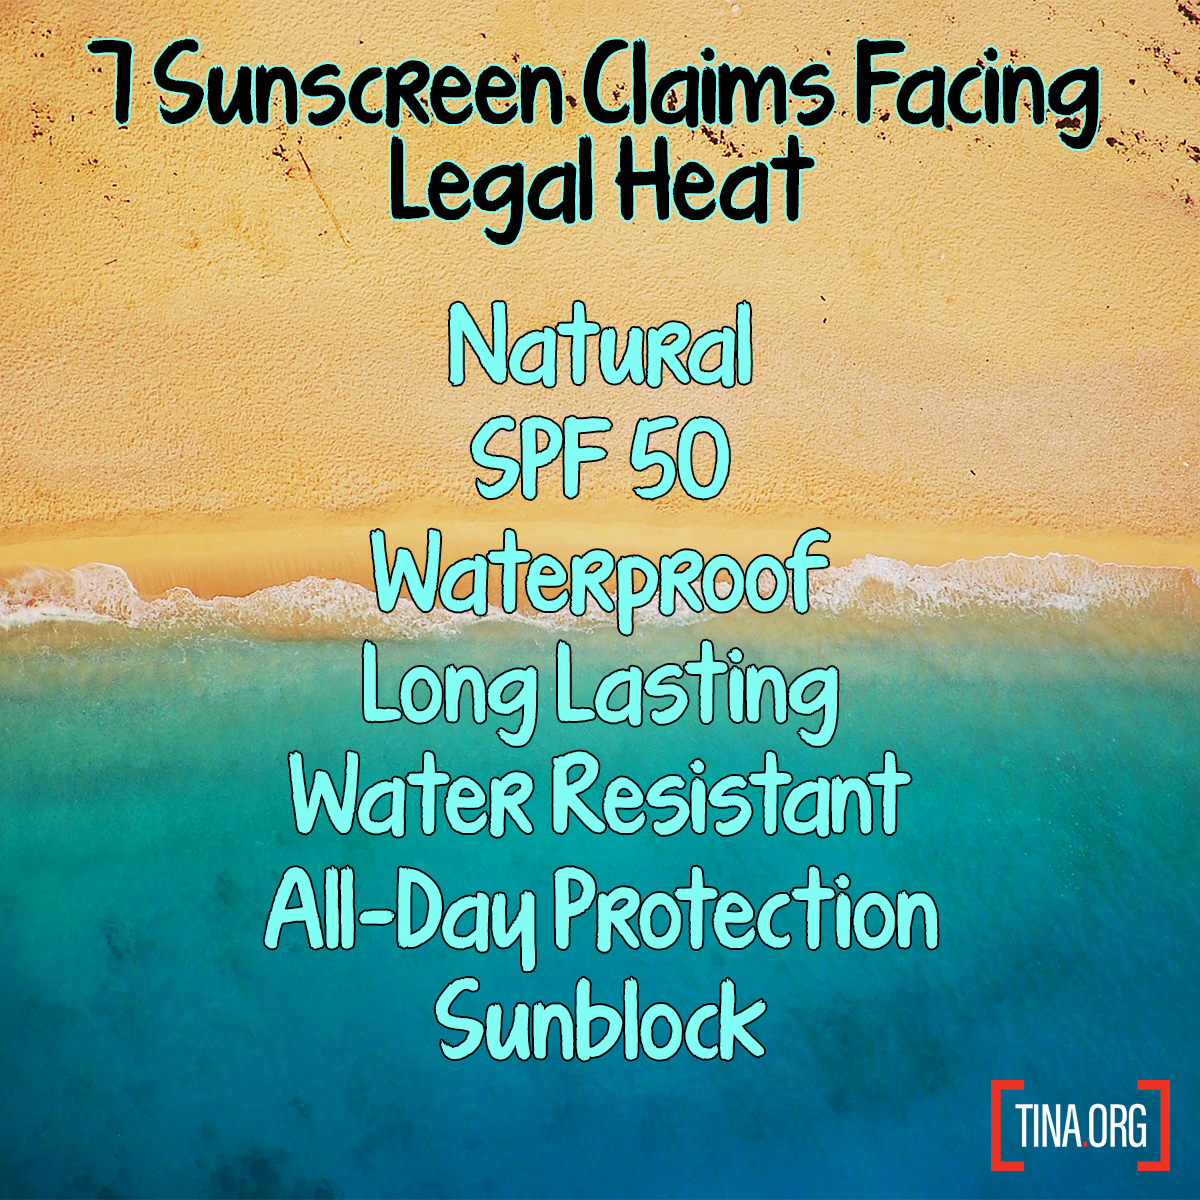 Sunscreen Claims List